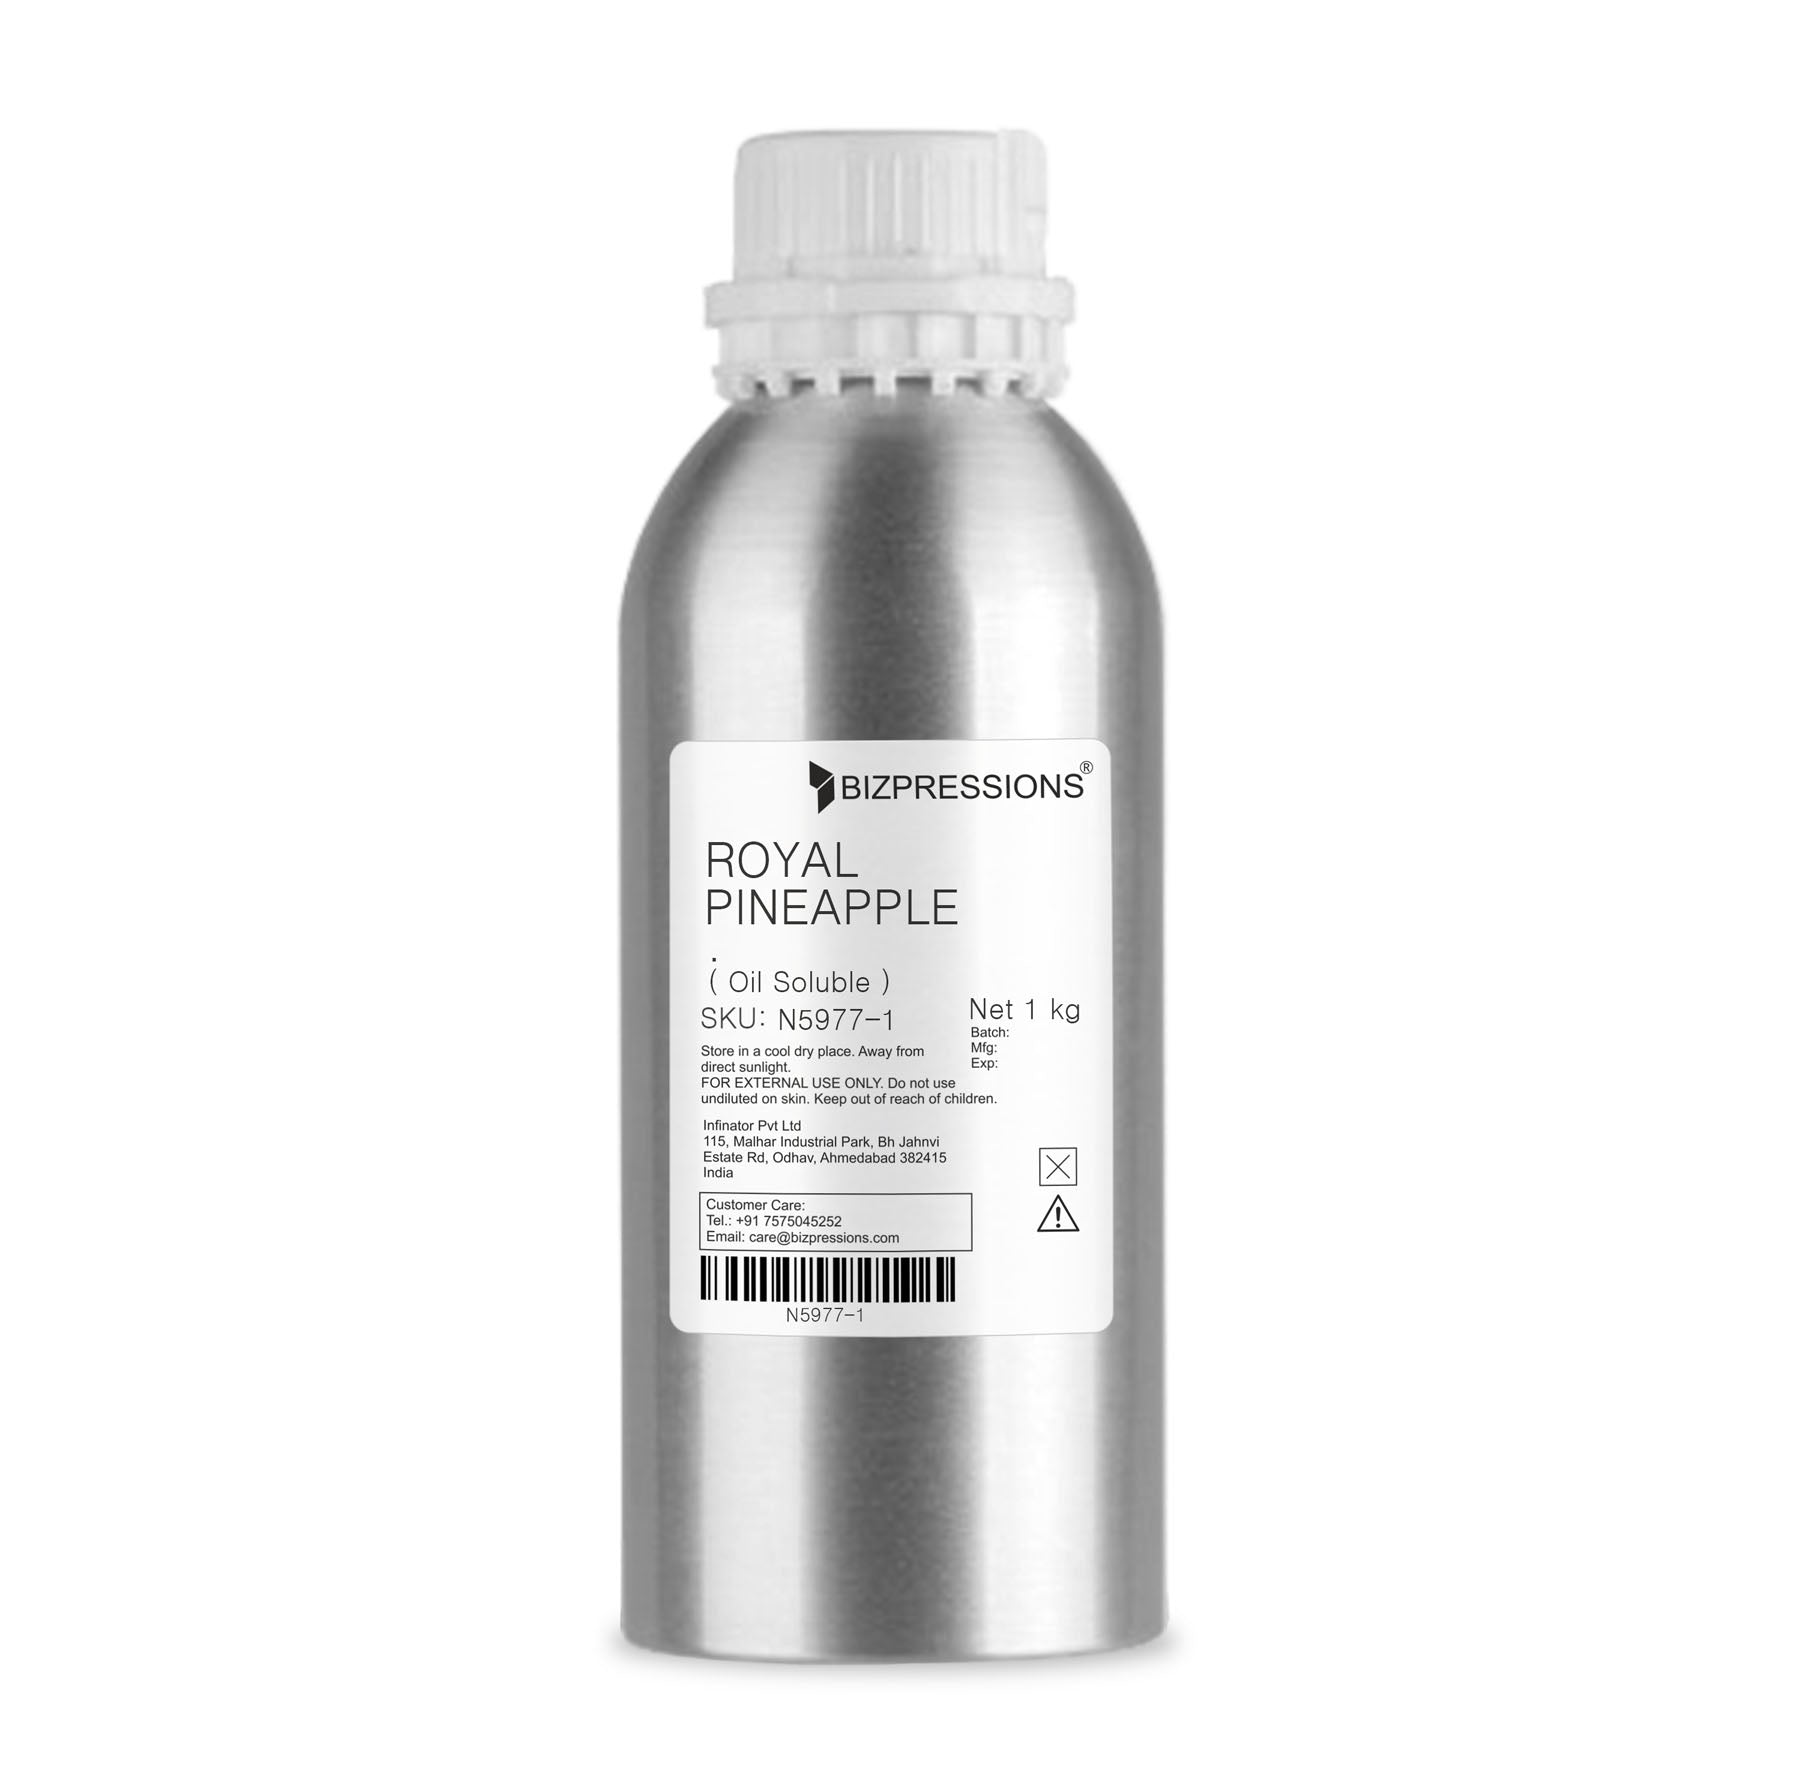 ROYAL PINEAPPLE - Fragrance ( Oil Soluble ) - 1 kg